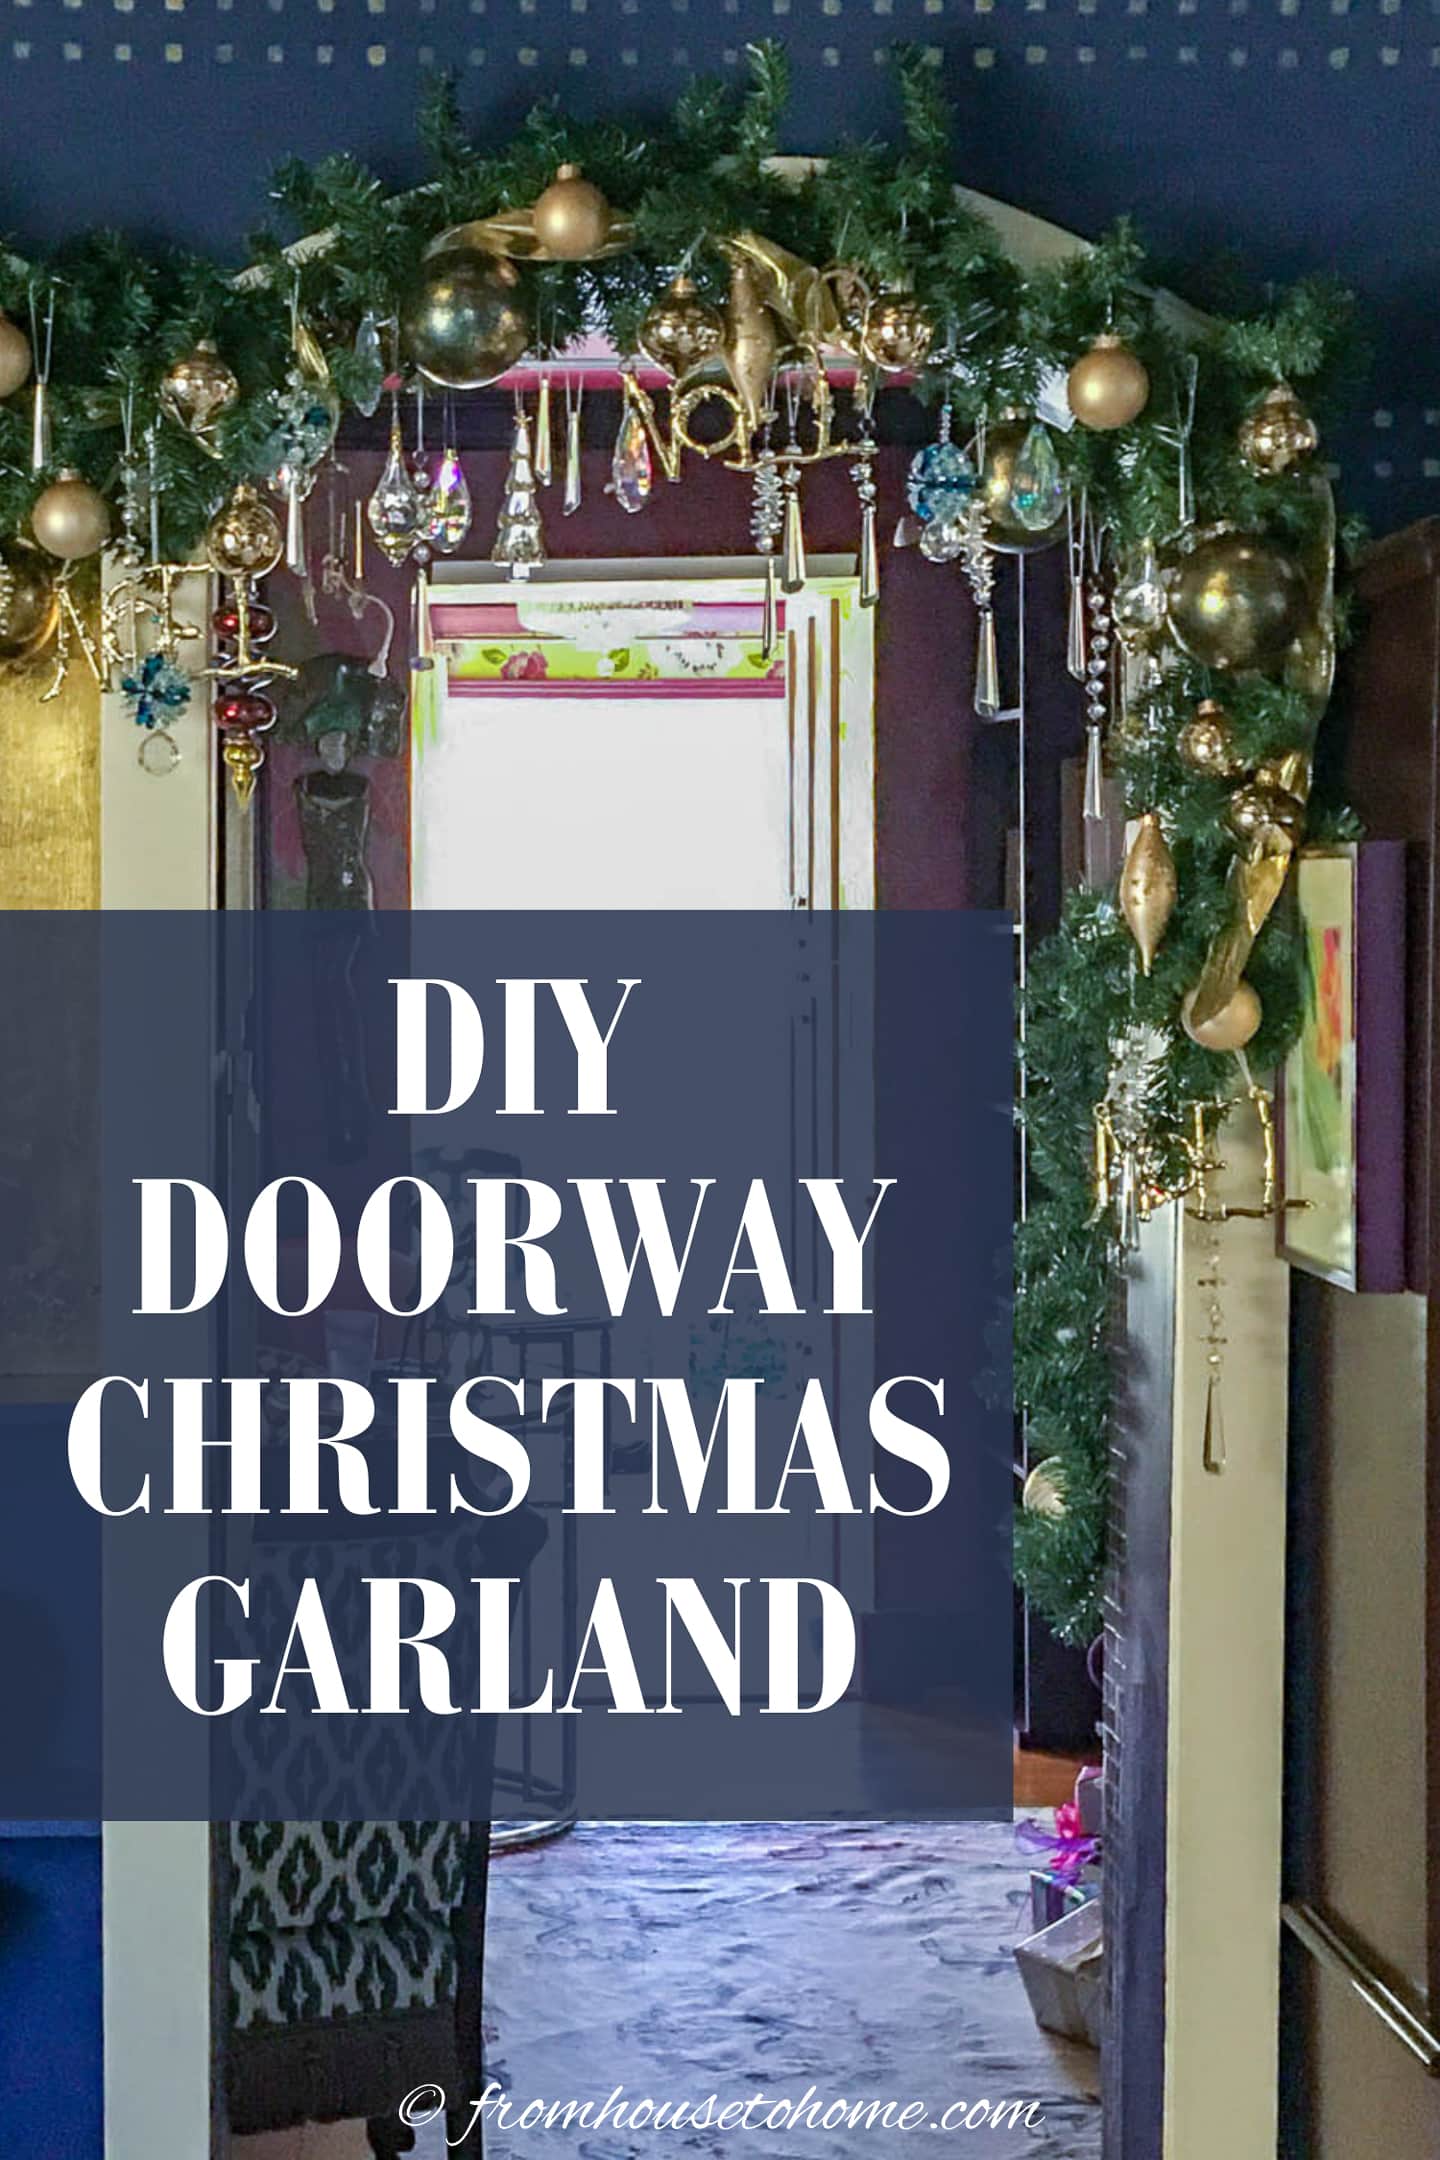 DIY indoor doorway Christmas garland